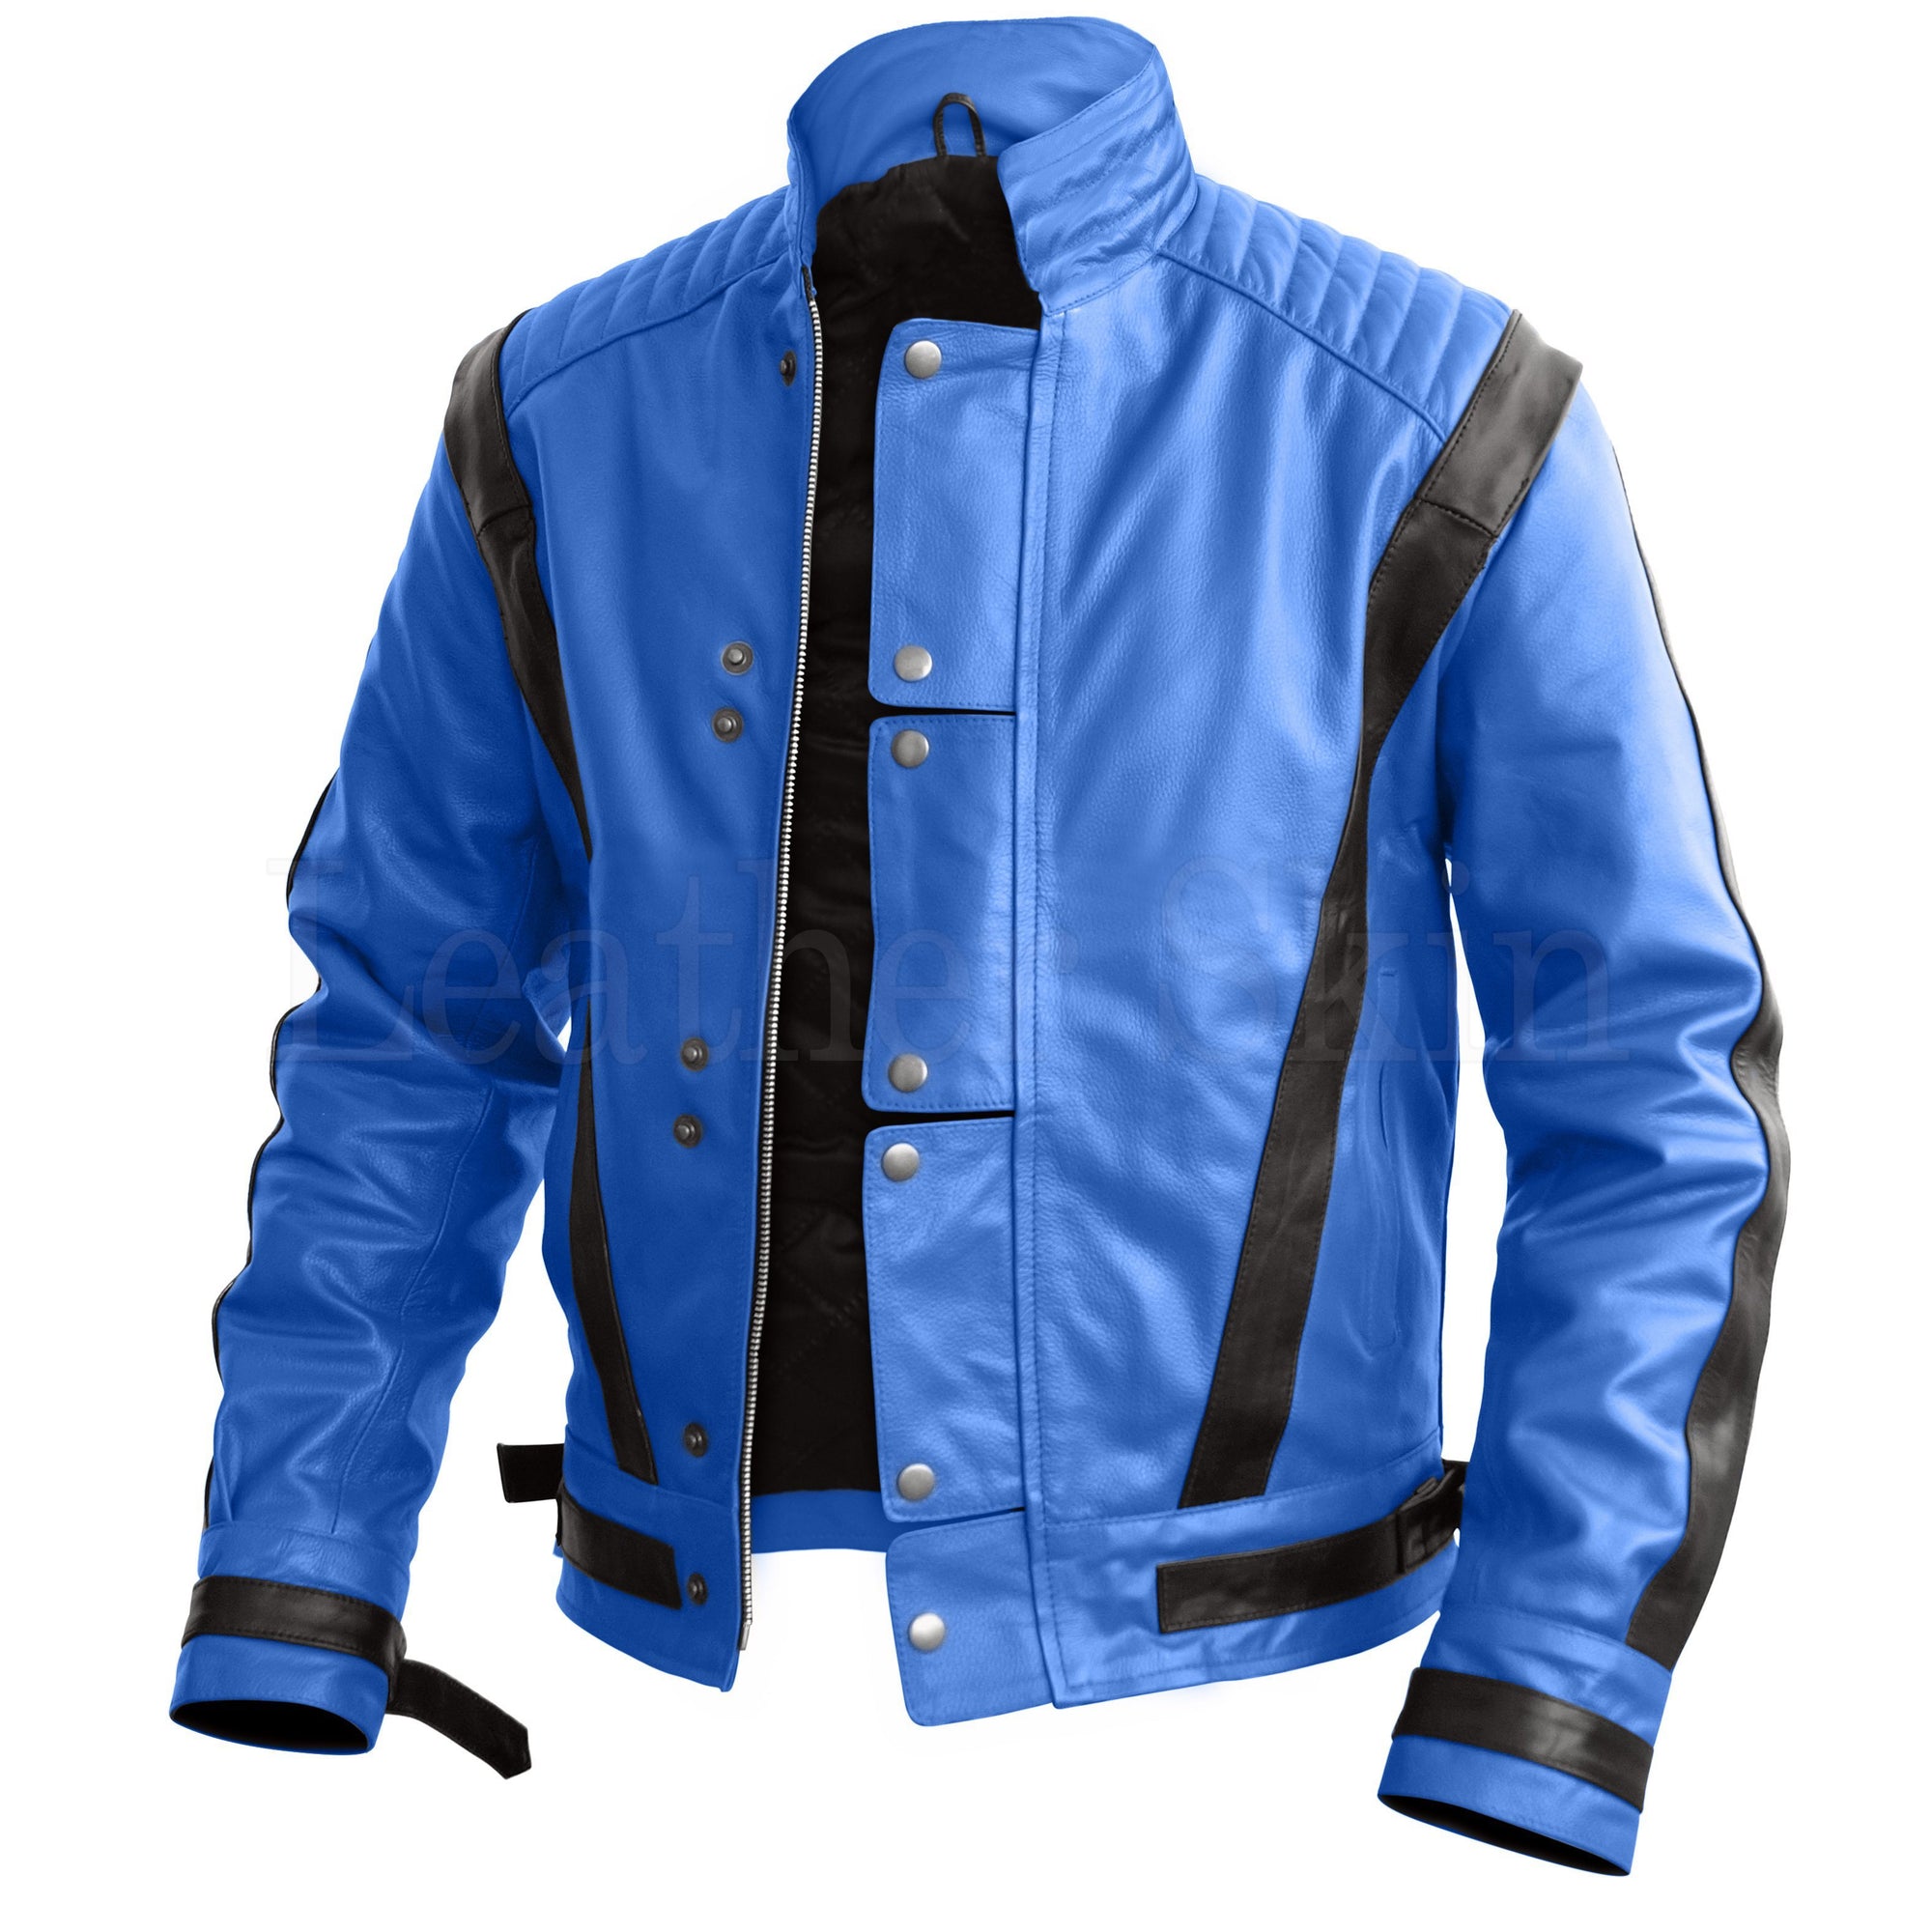 Michael Jackson Blue Leather Jacket for Men Thriller